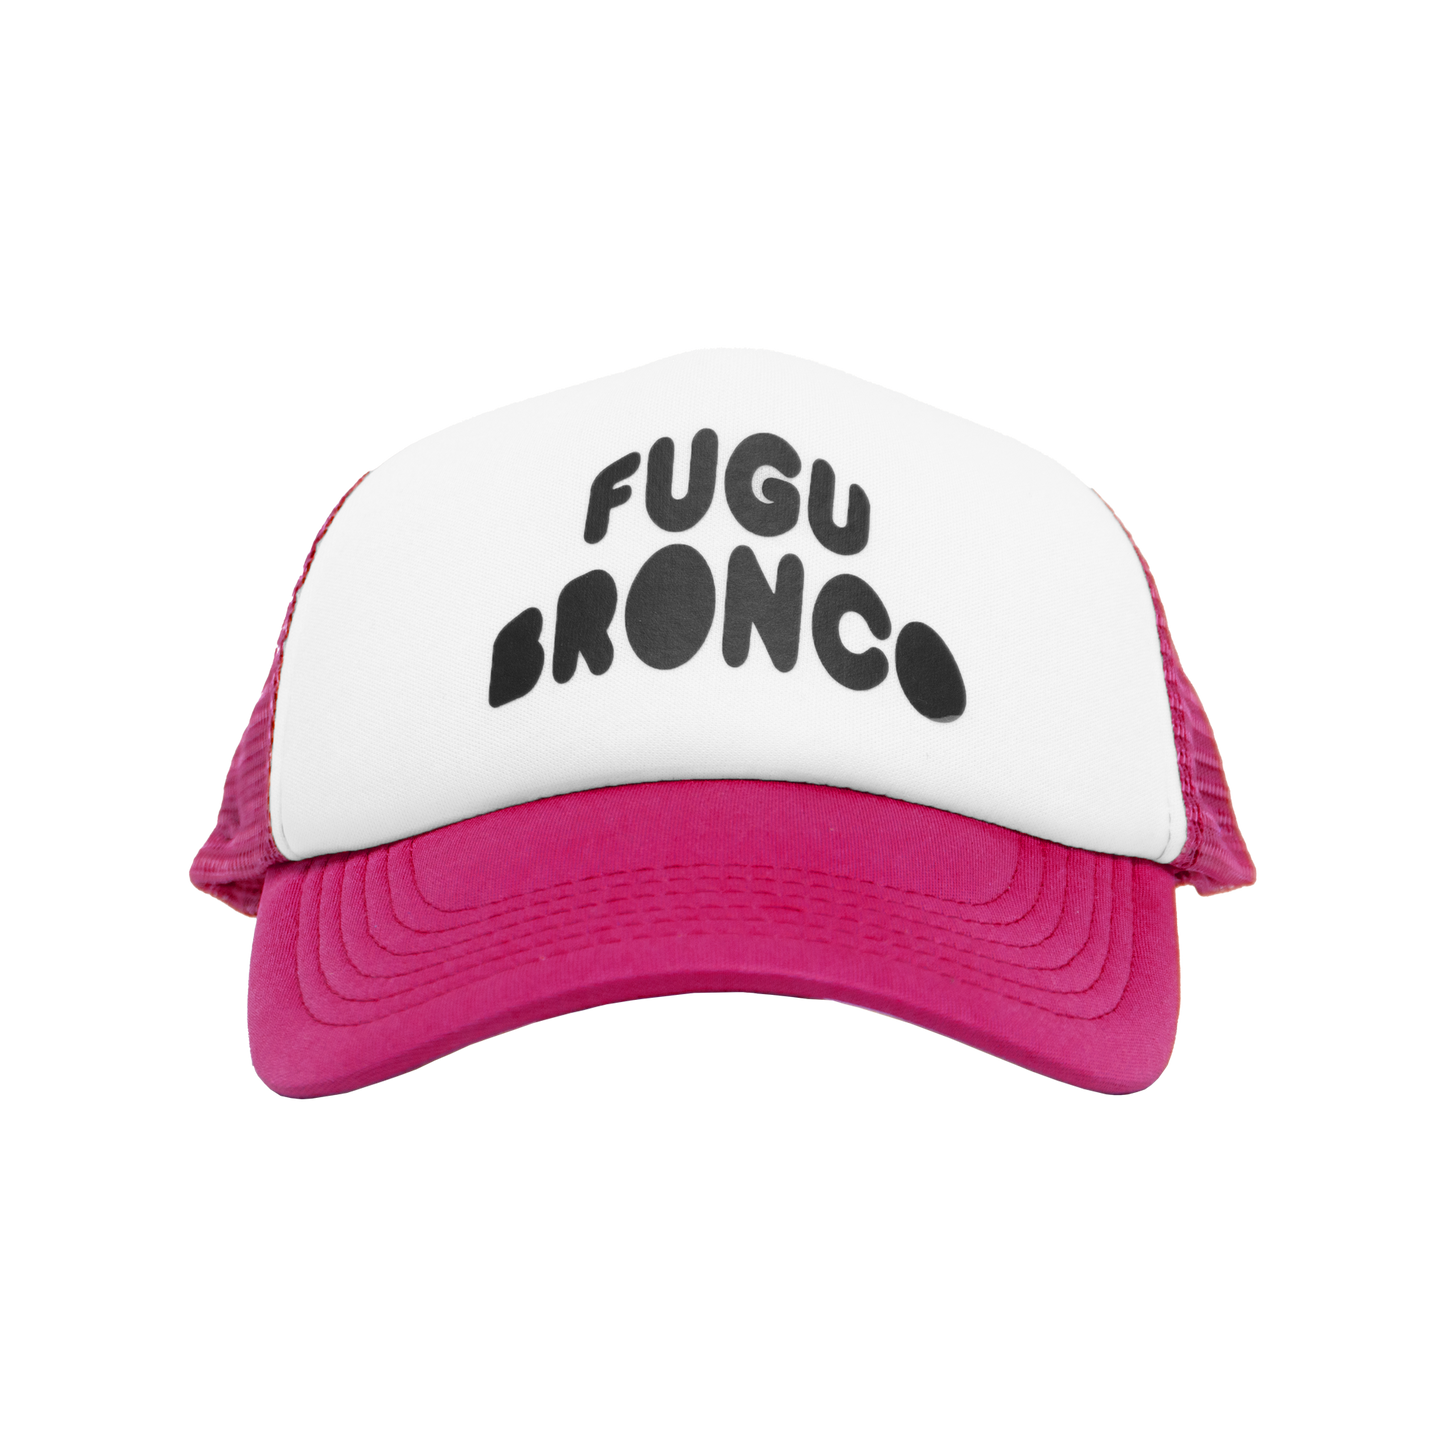 FUGU BRONCO CAP MAGENTA